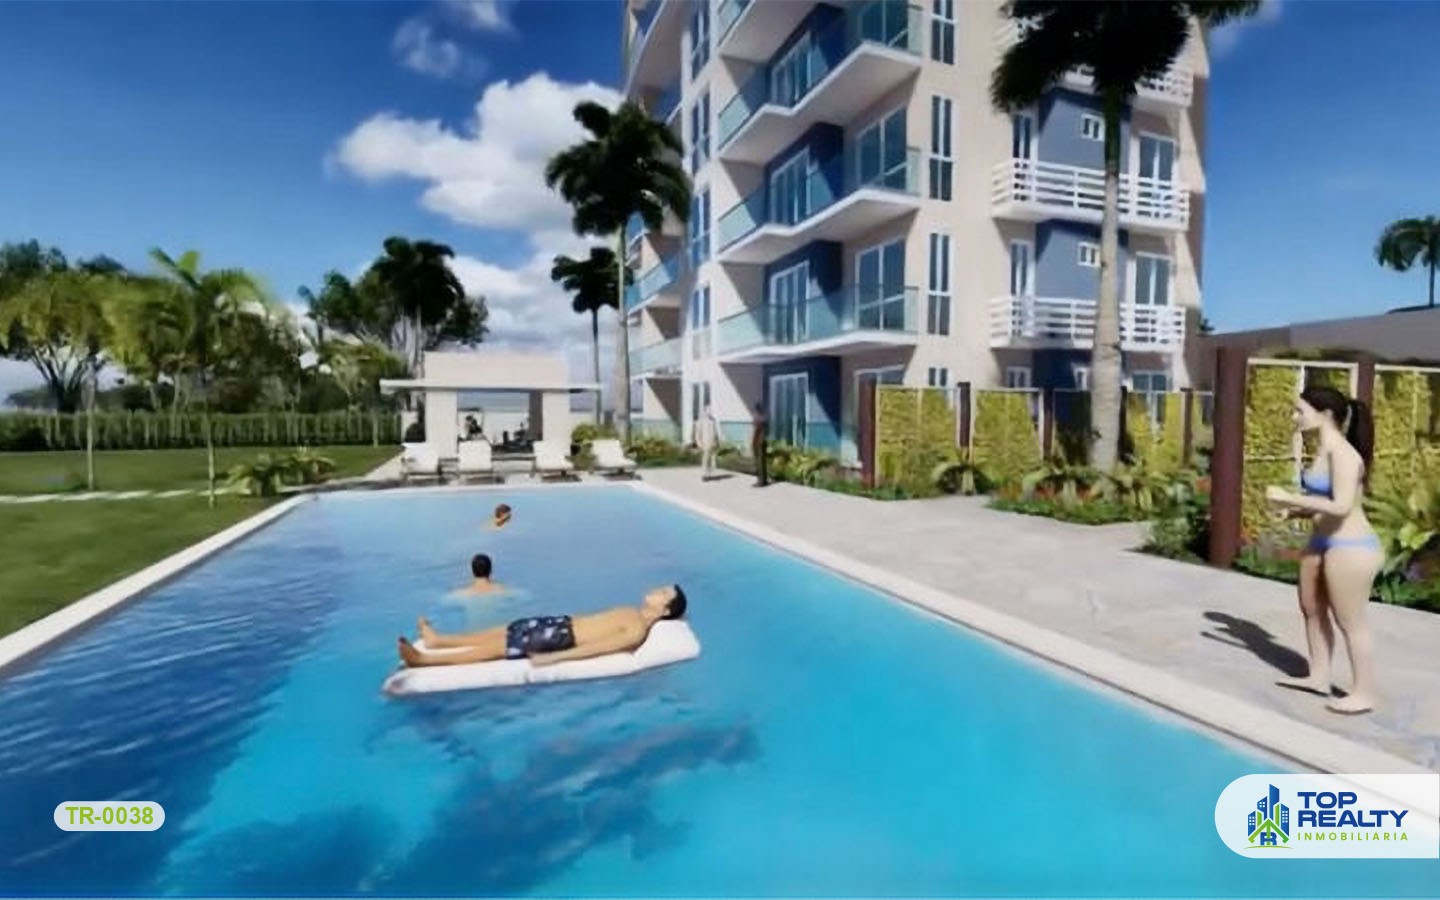 apartamentos - TR-0038: Apartamentos frente al mar y playa azul turquesa. 2